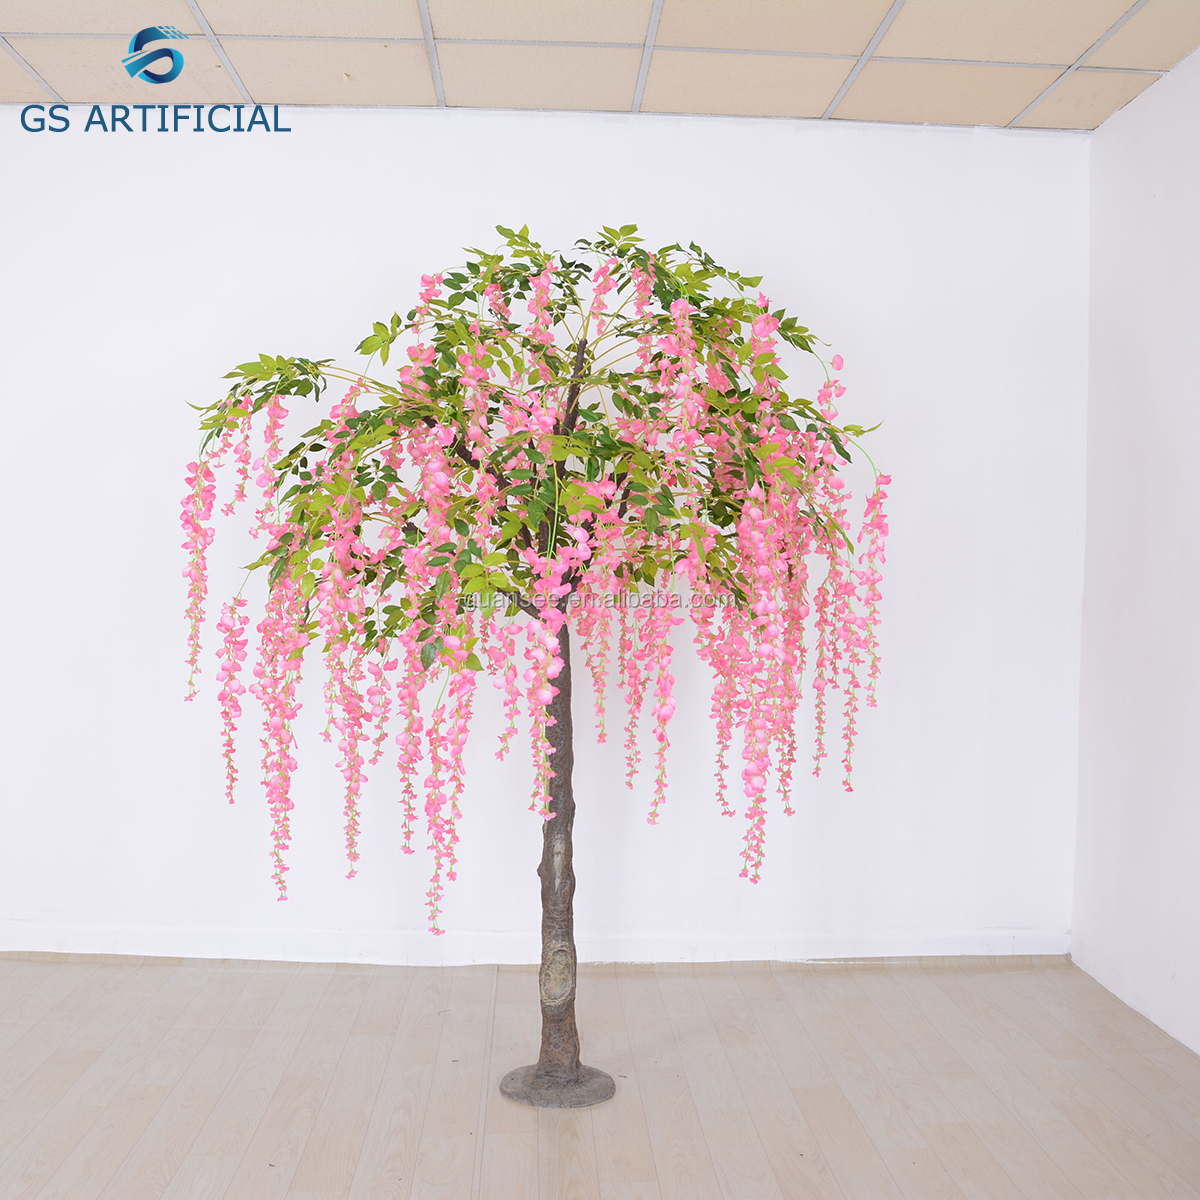 High quality Artificial flower Wisteria Tree for Decor